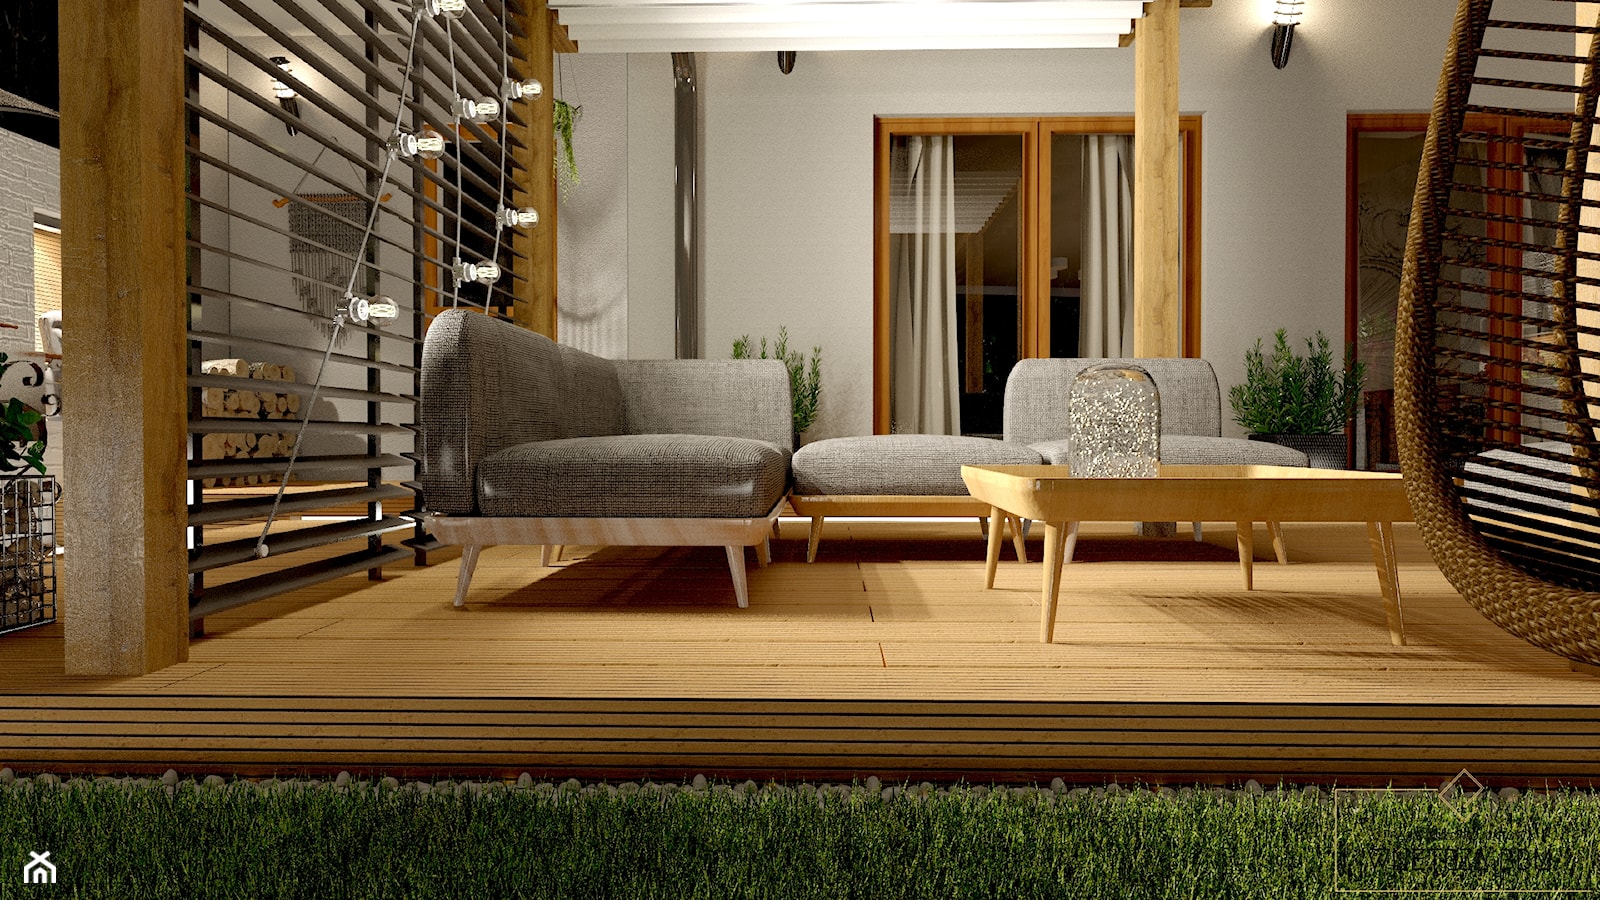 Przydomowe patio - Taras, styl nowoczesny - zdjęcie od Pracownia Projektowa WnętrzaBBM - Homebook